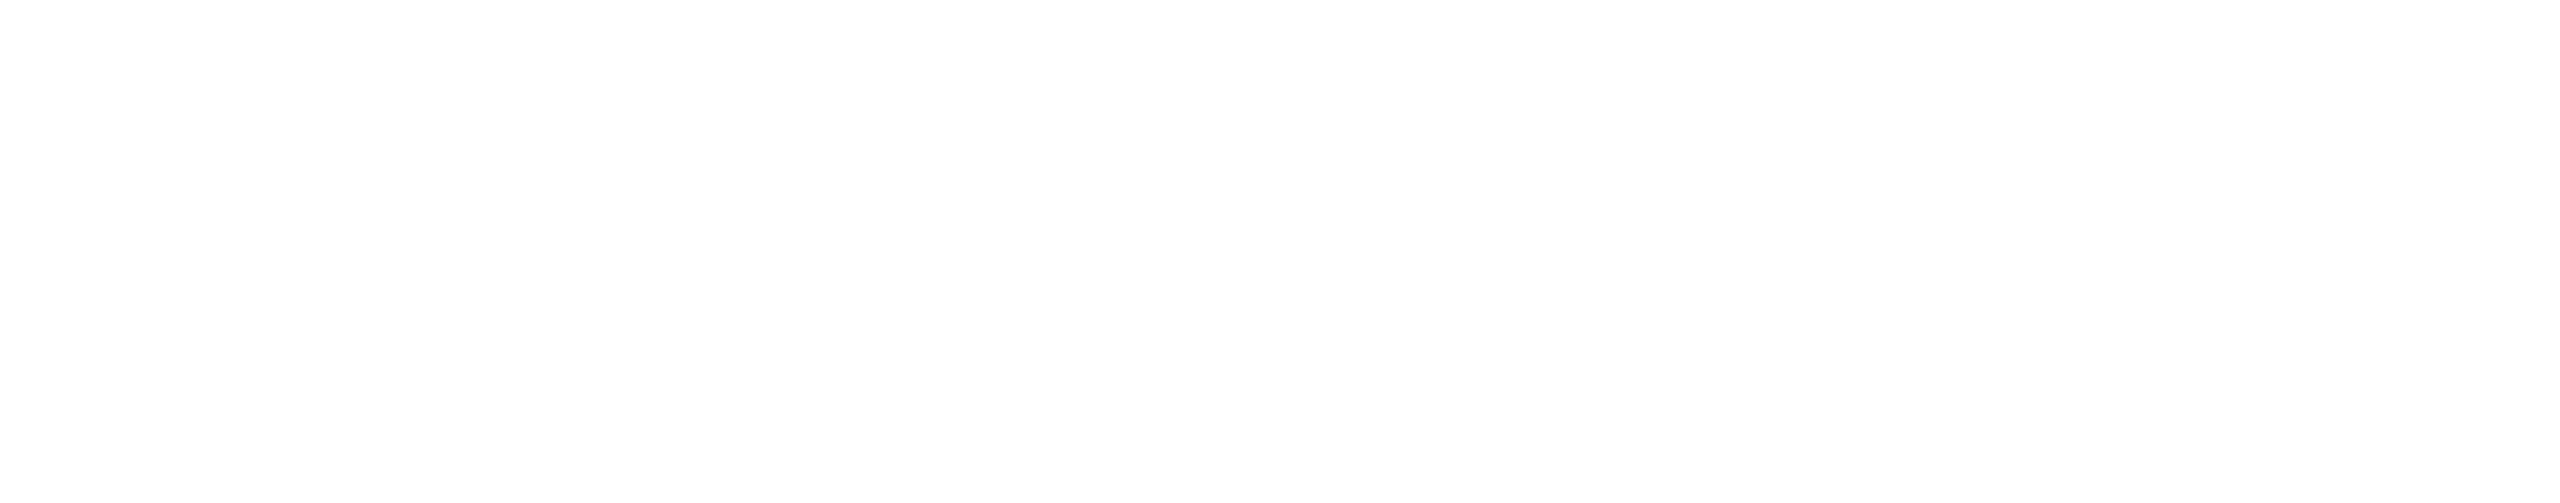 Société Générale logo séminaire